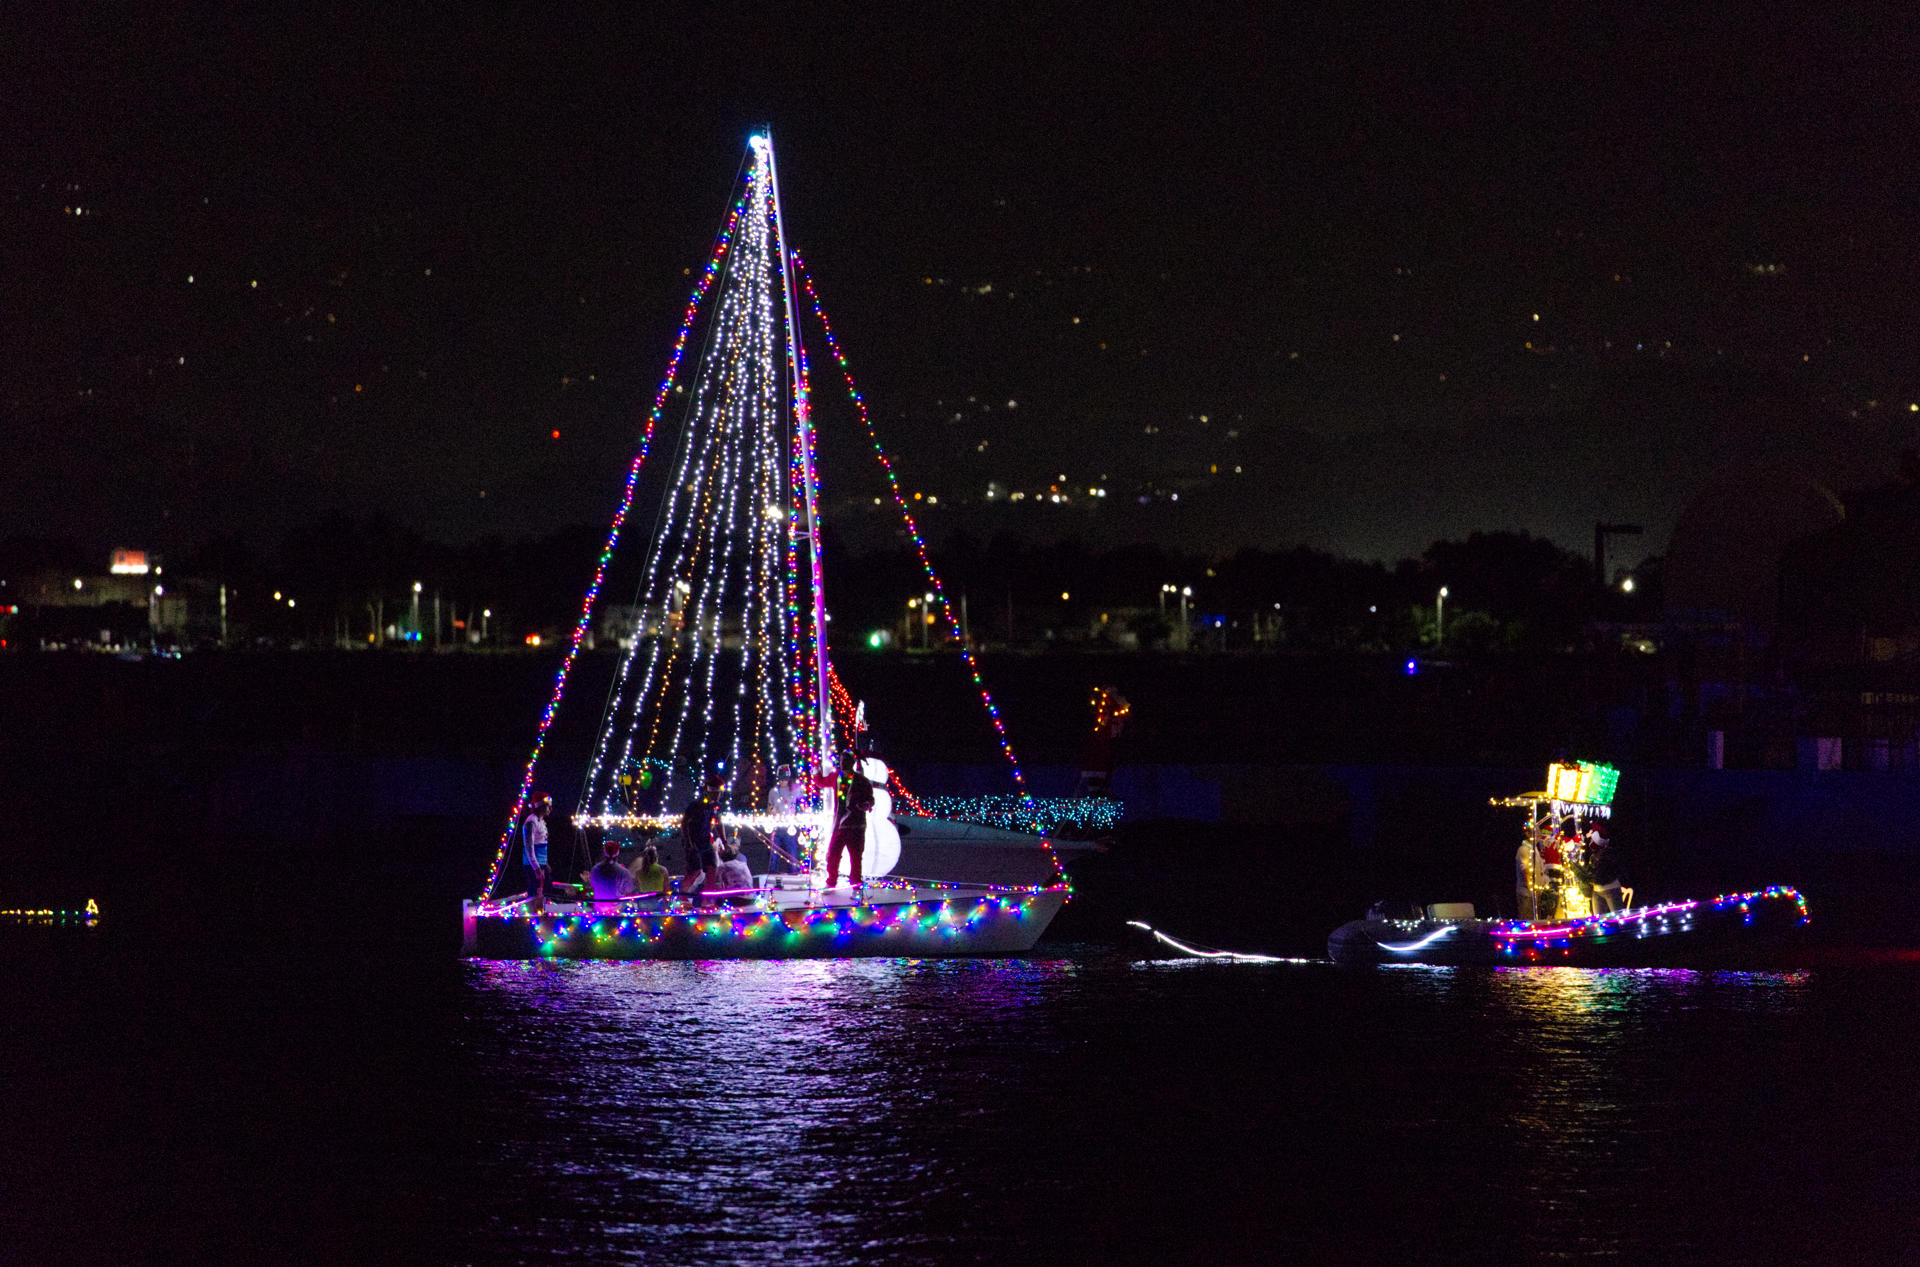 Un desfile de barcos iluminados celebra la Navidad en Puerto Rico